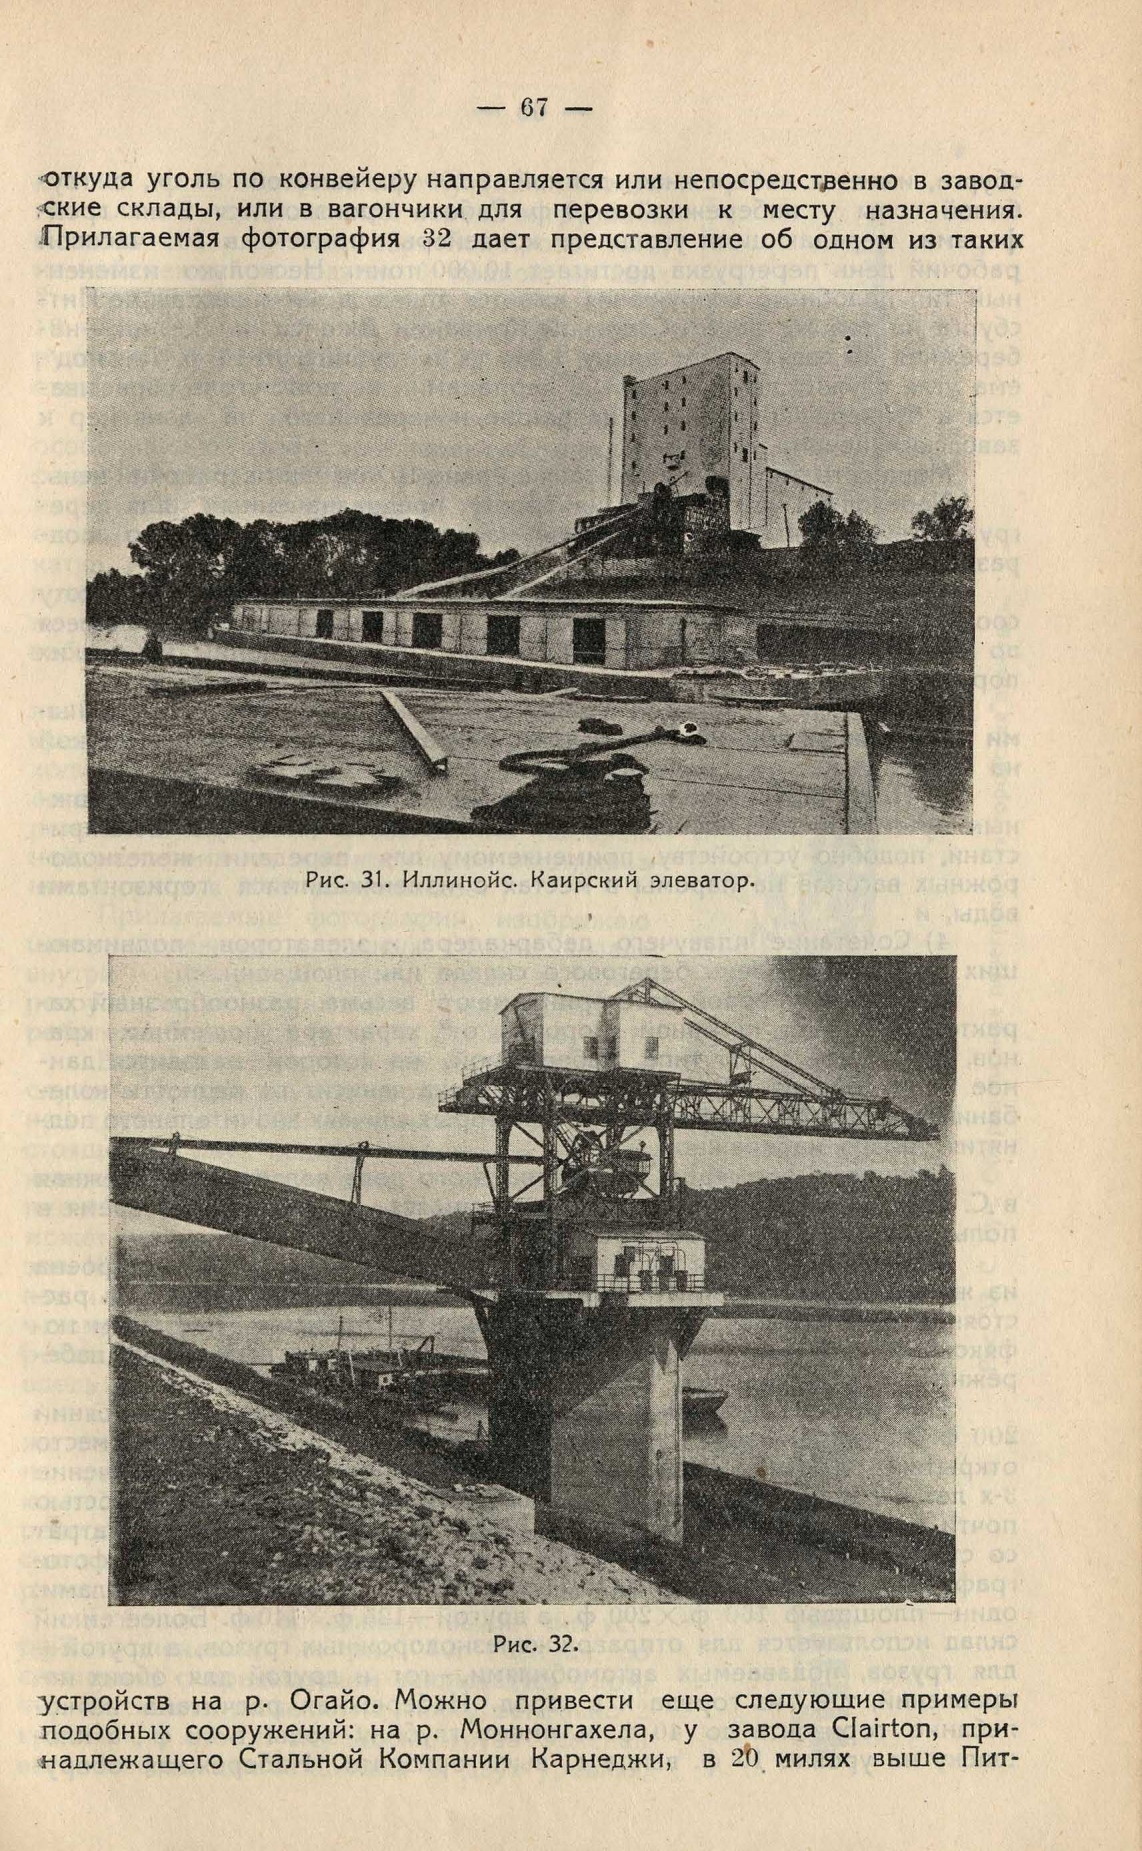 Водные пути Германии и Северной Америки : Труды правительственной экспертизы. 1930